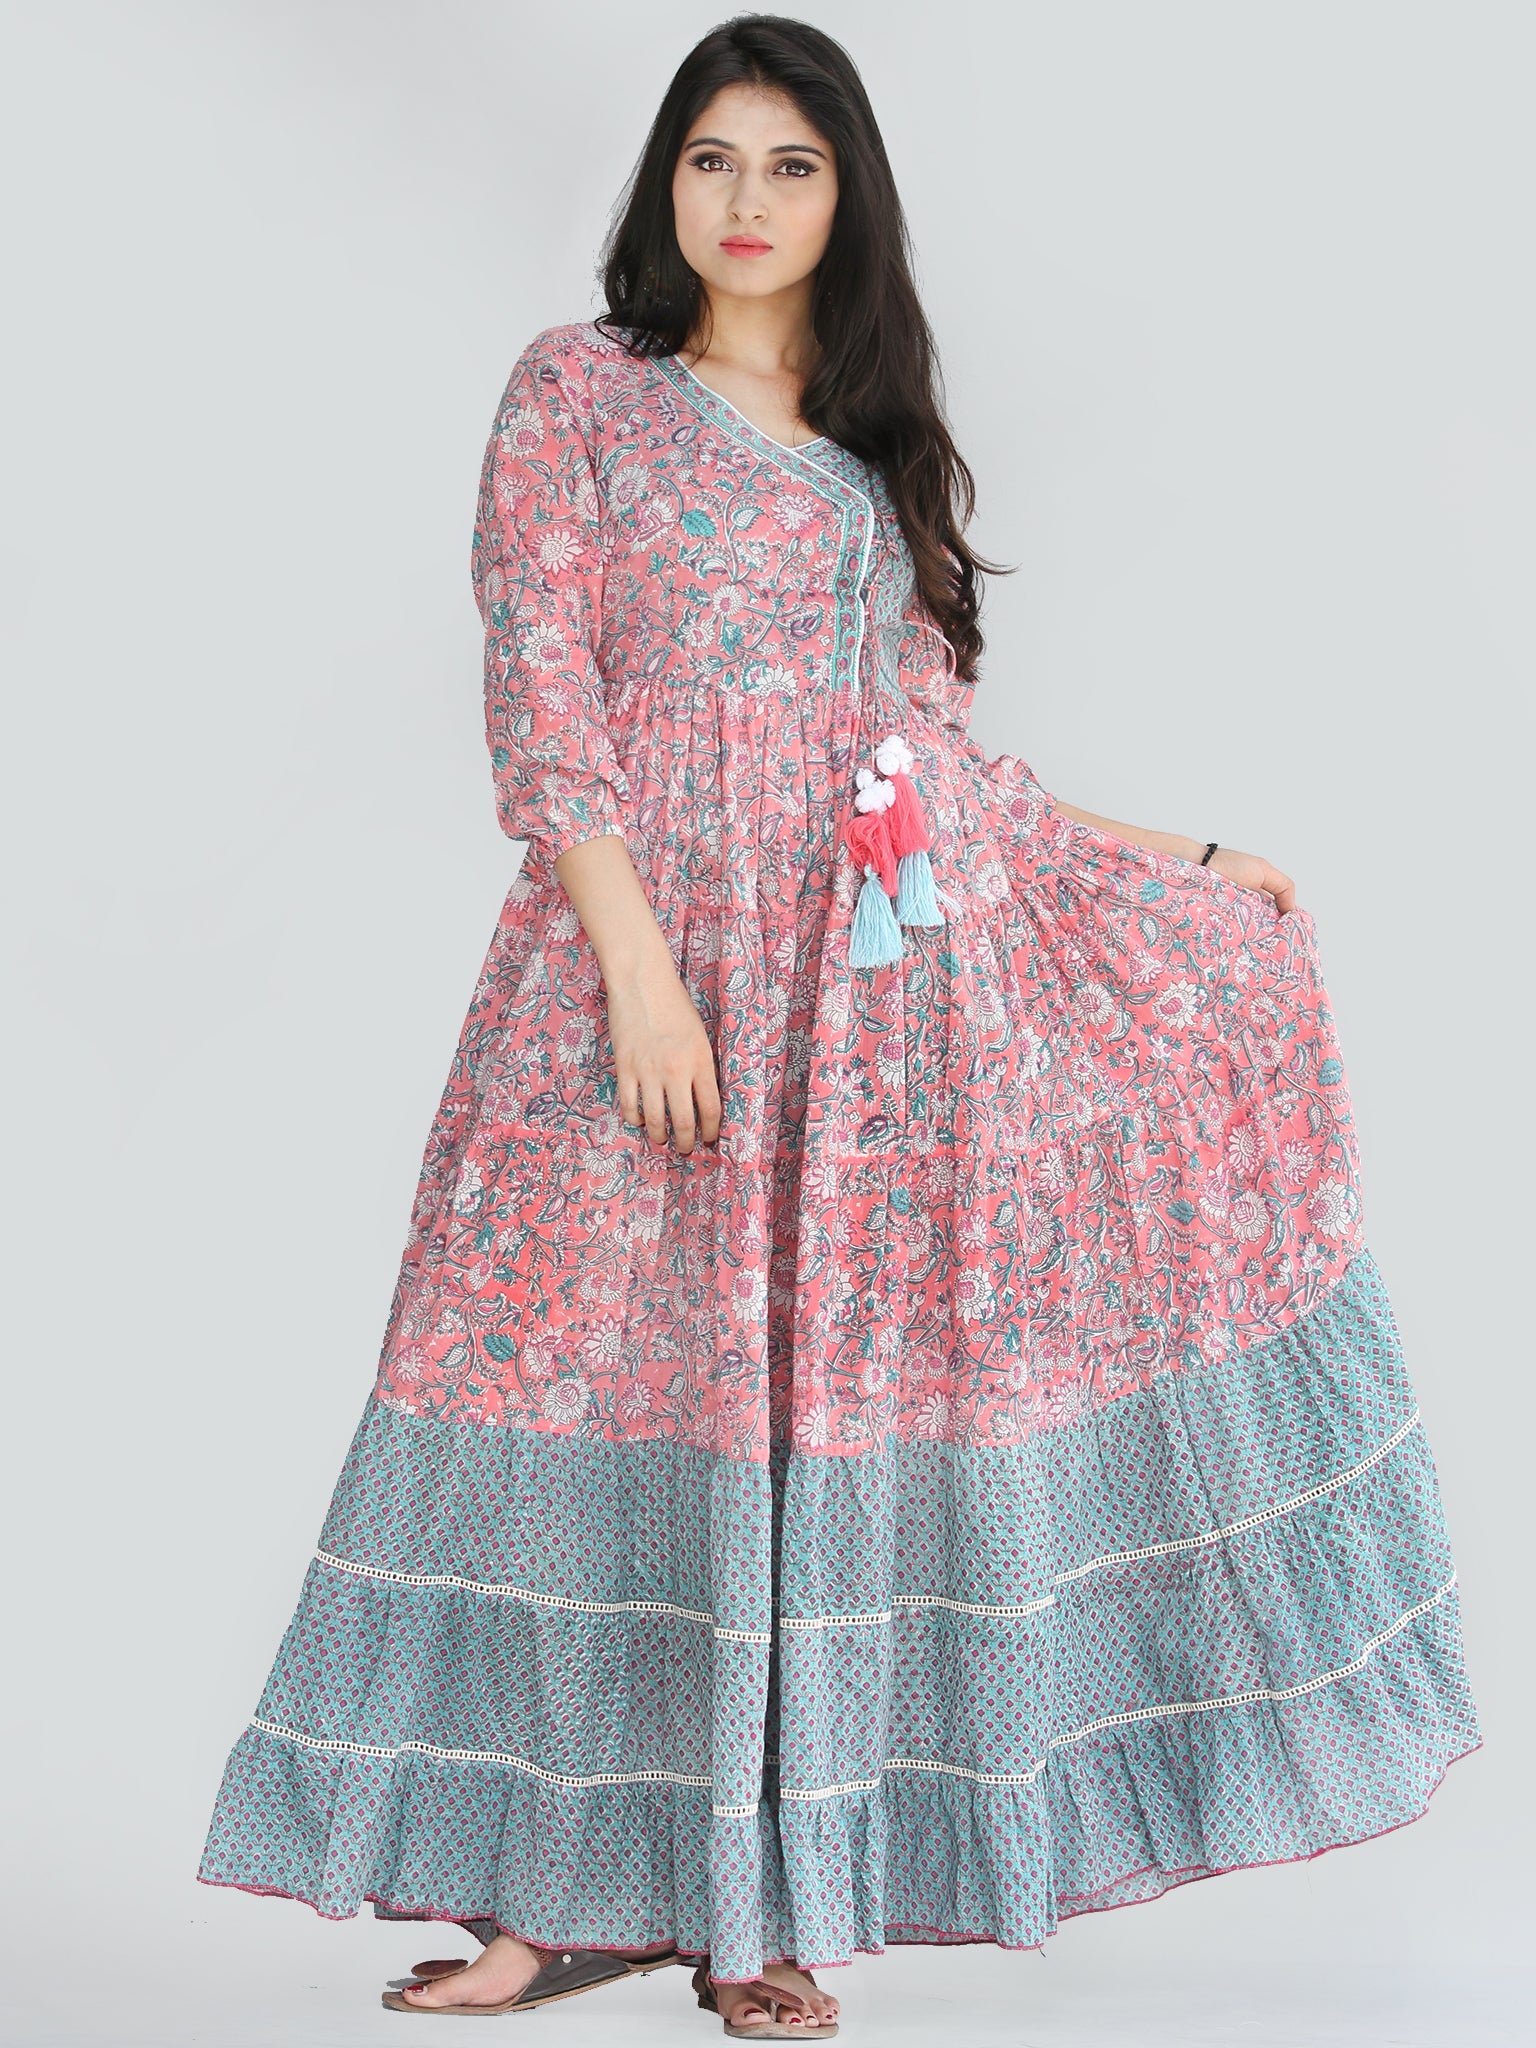 Gulzar Nohreen - Coral Hand Block Printed Tiered Long Angrakha Dress W ...